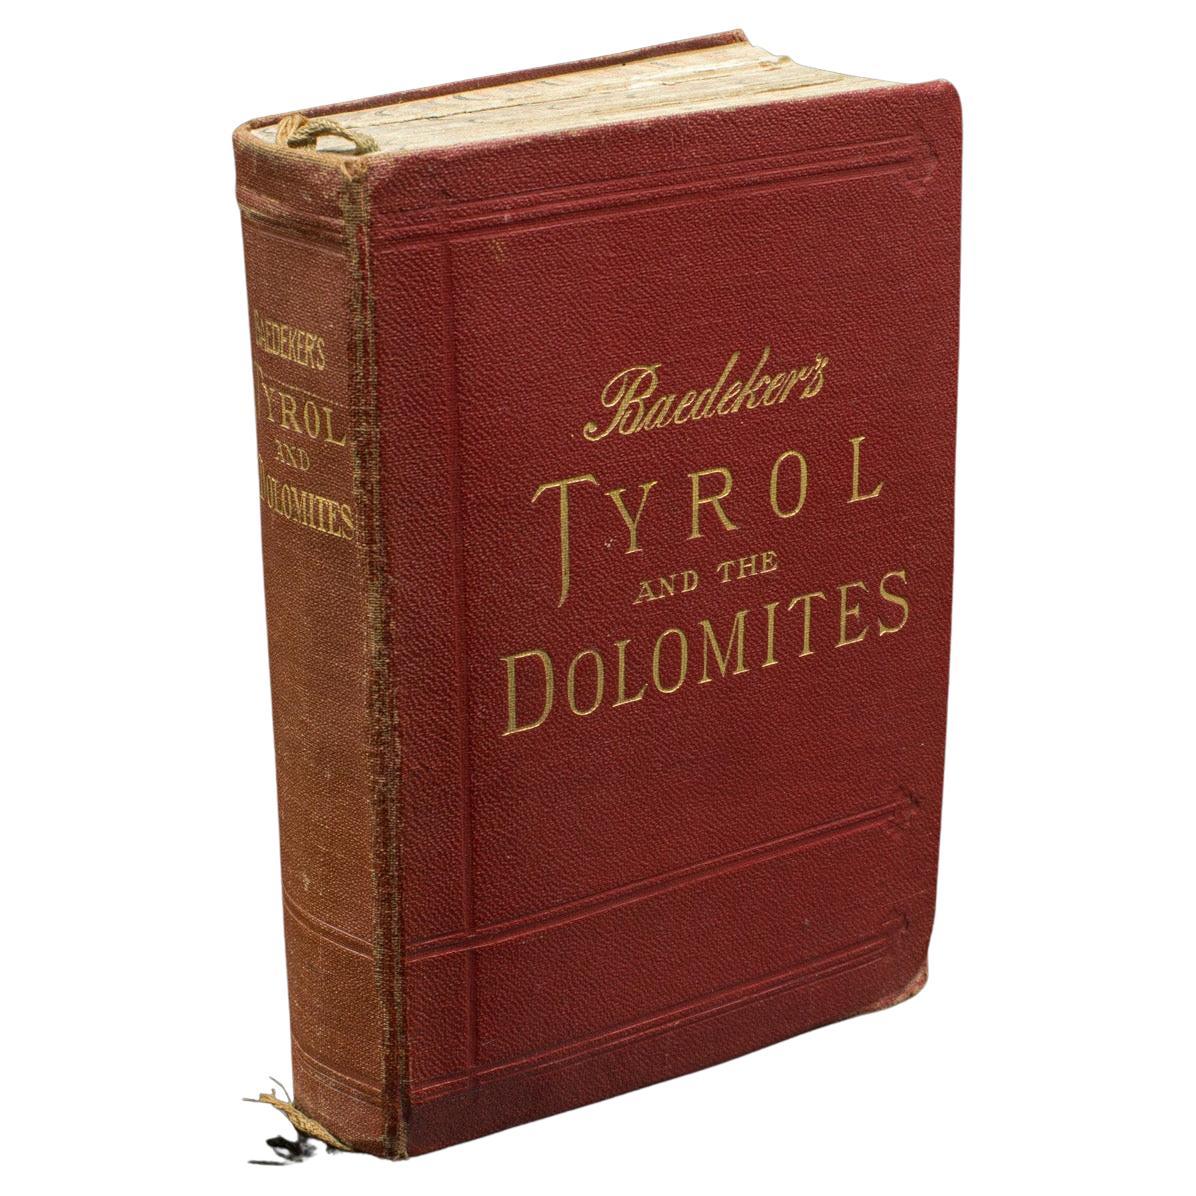 Baedeker's Guide, Tyrol & Dolomites, langue anglaise, publié en 1927